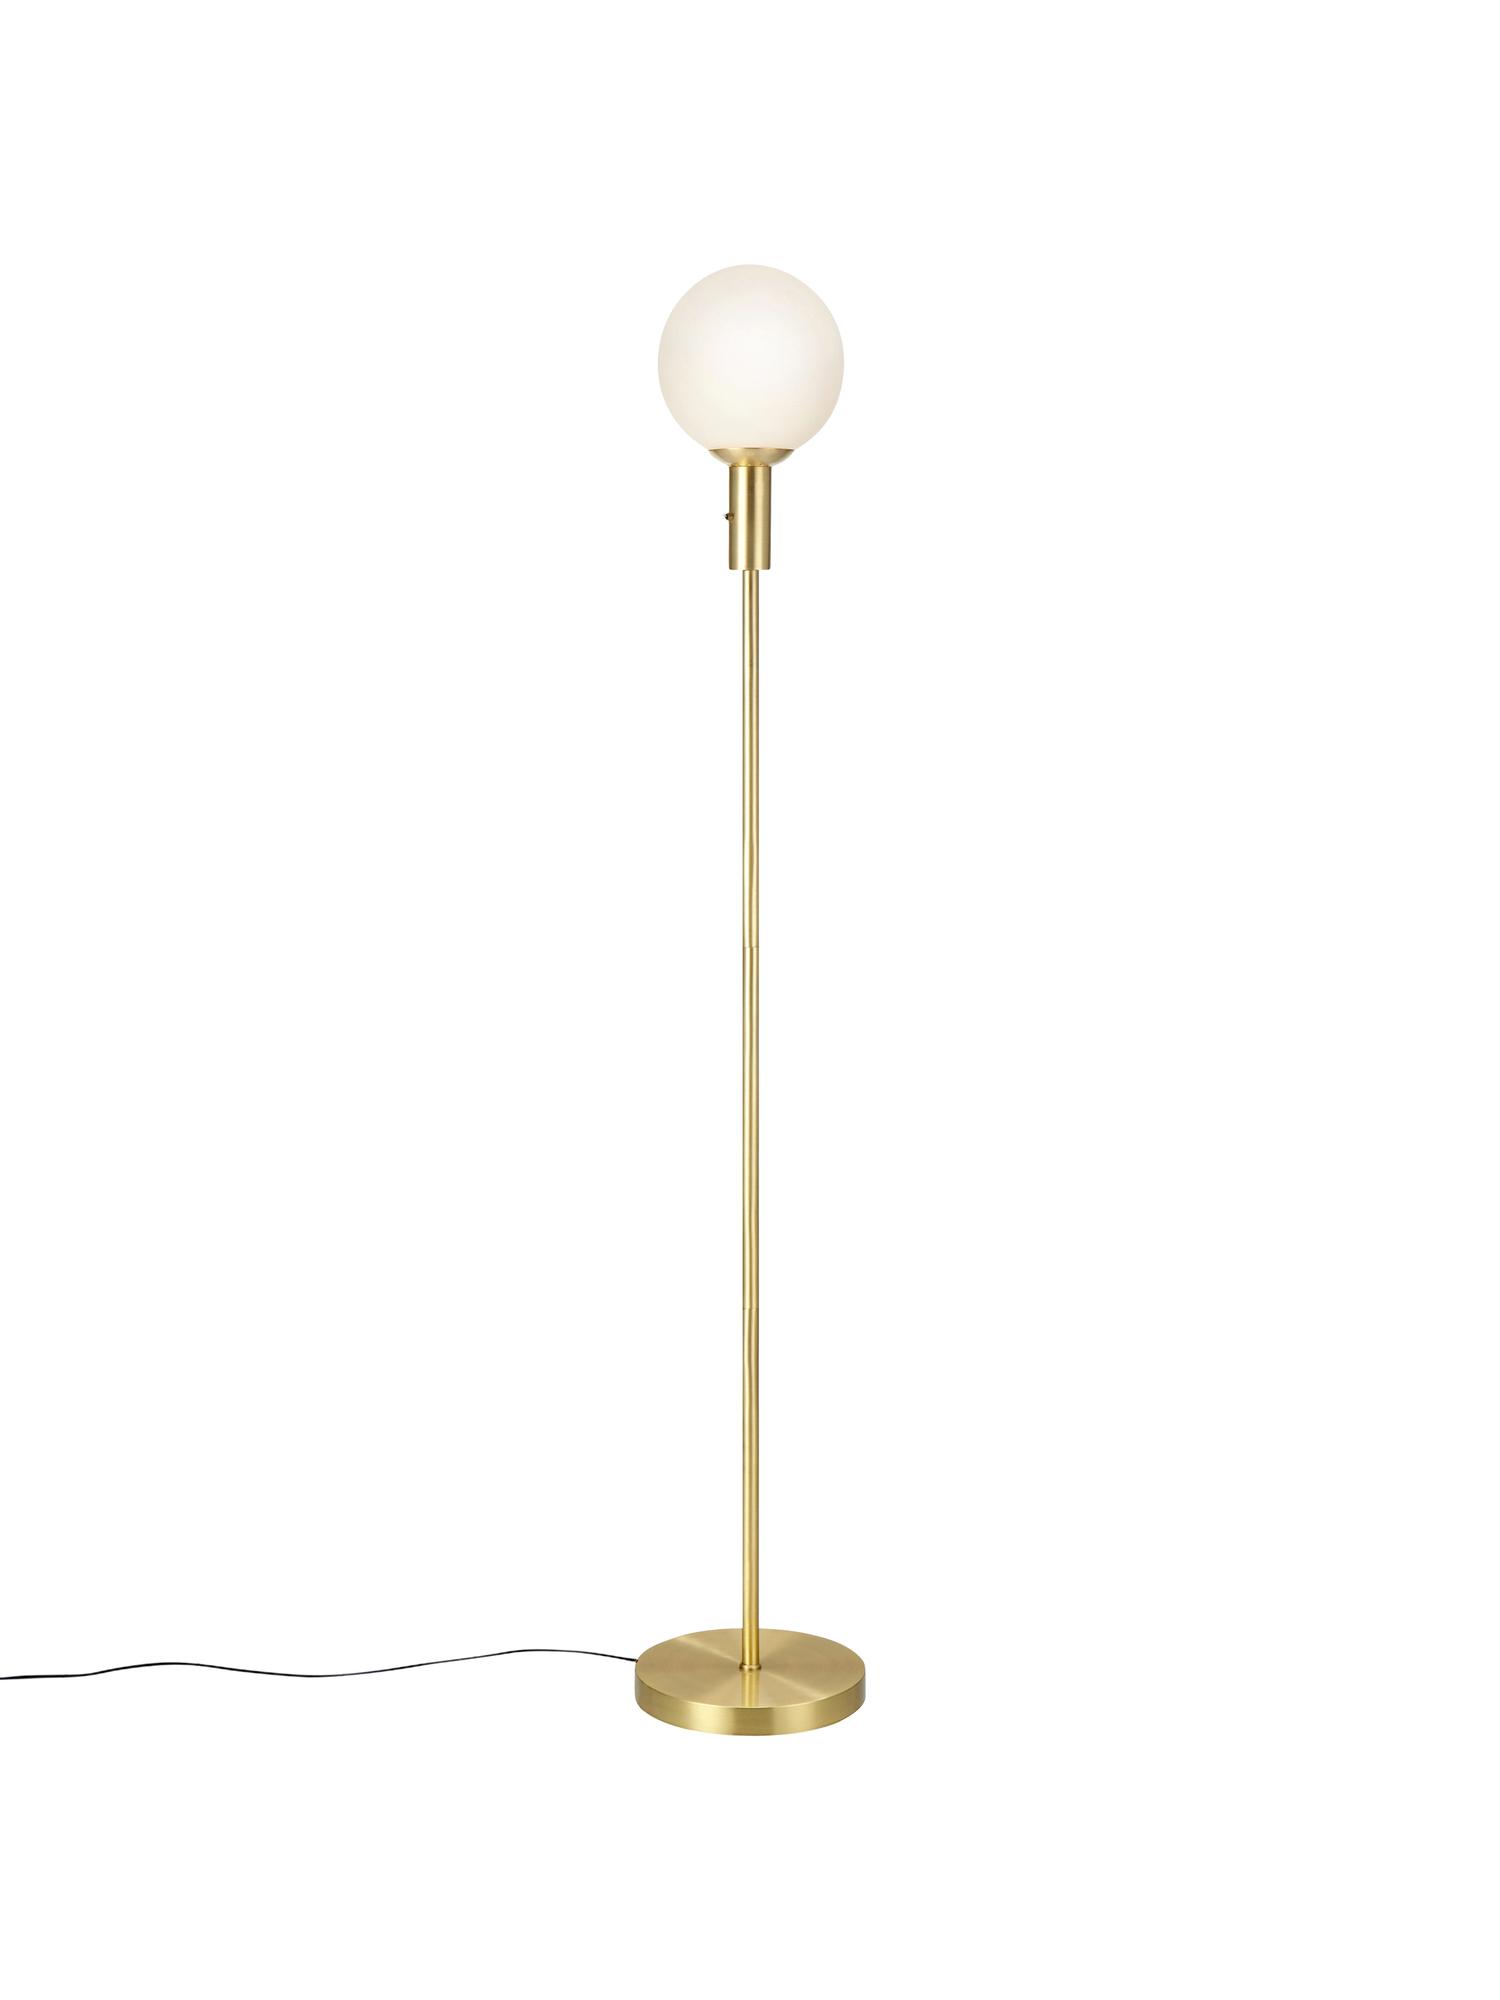 Stehlampe Minna aus Opalglas, Lampenschirm: Opalglas, Lampenfuß: Metall, vermessingt, Messing, Ø 22 x H 144 cm